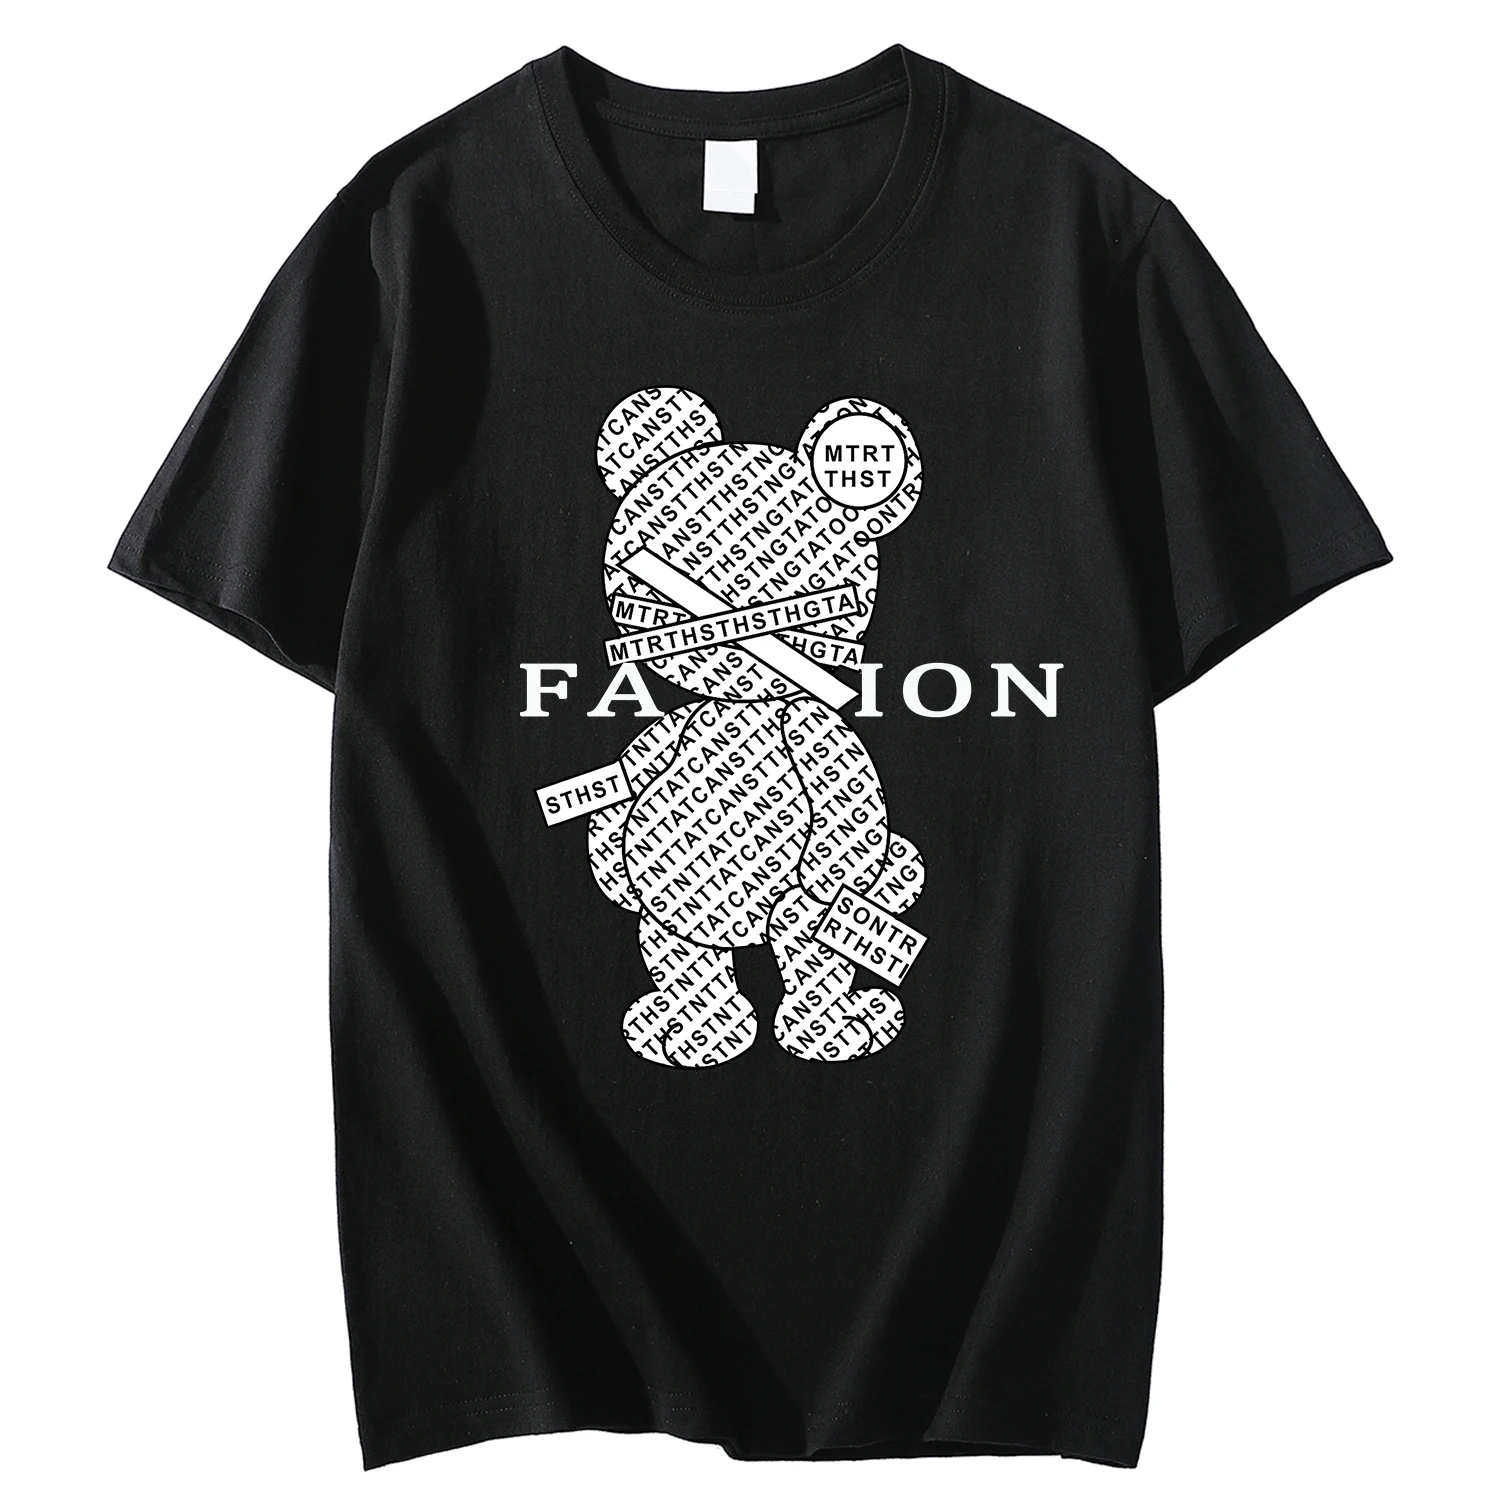 

Легкая, с большими буквами и медвежьими узорами, футболки с короткими рукавами для мужчин с короткими рукавами, футболки с короткими рукавами и футболки без платы за одежду